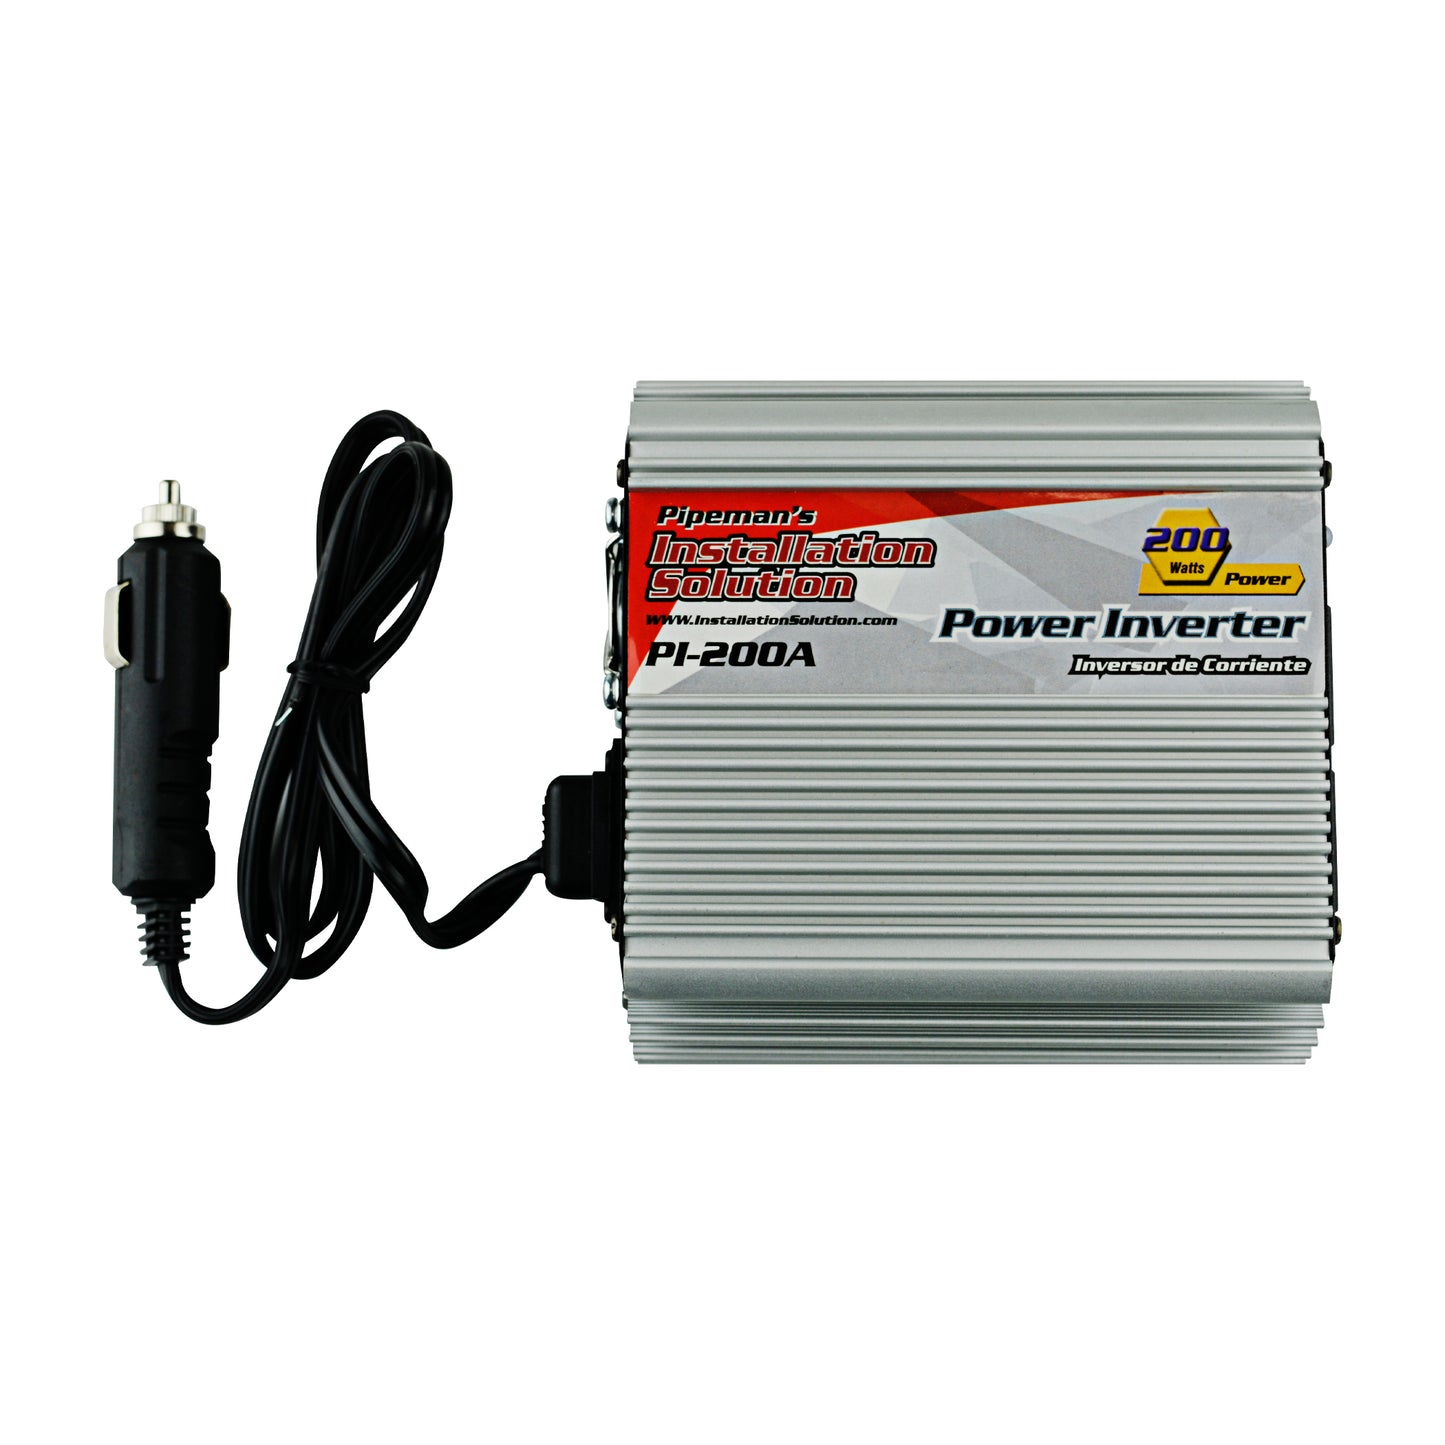 PI-200A - 200 Watts 12V DC to 110V AC Power Inverter